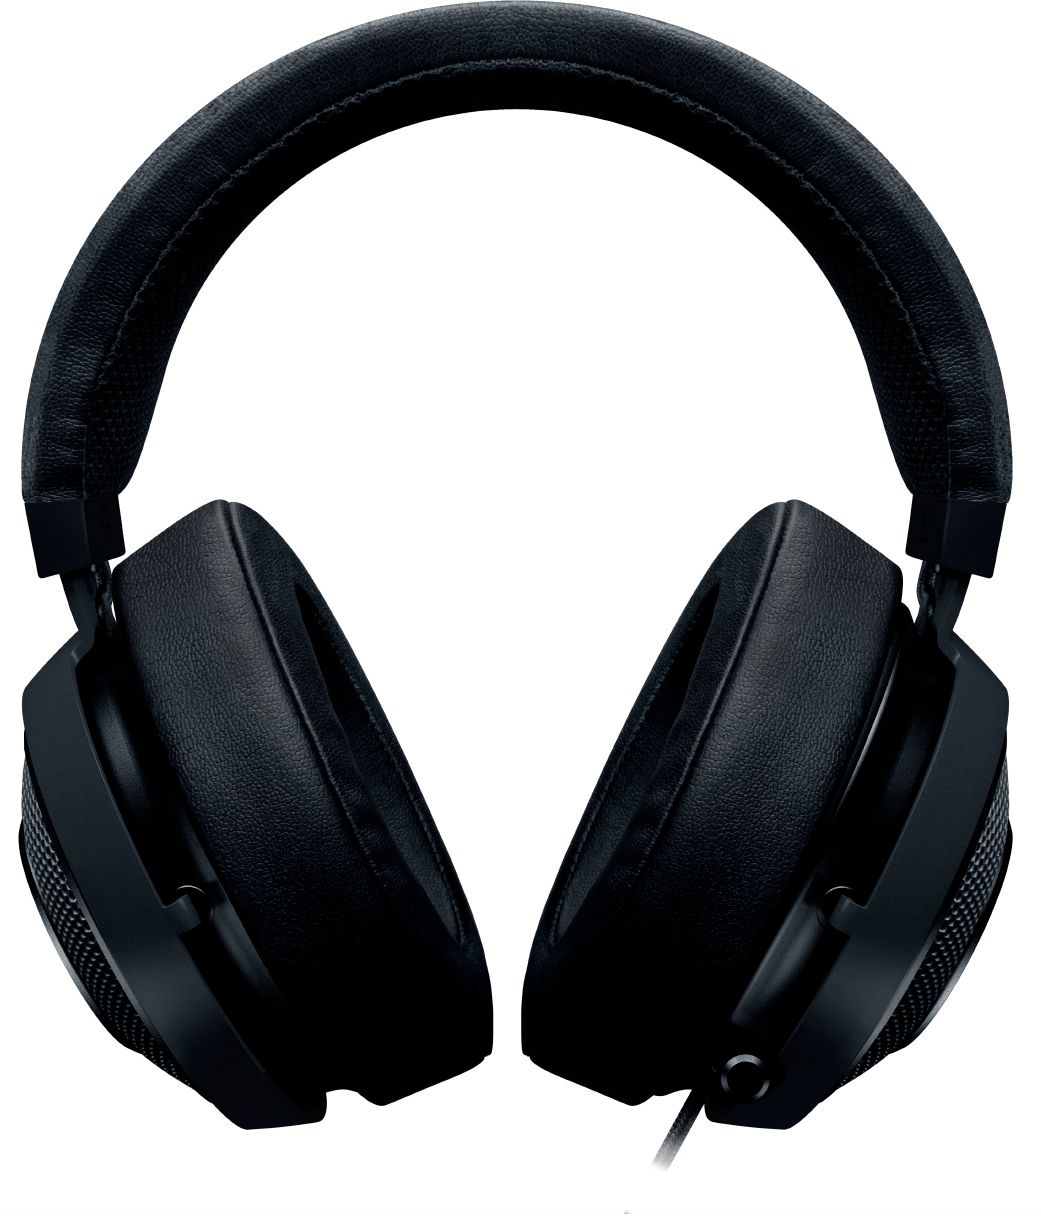 Razer Kraken 7.1 v2 Surround Gaming Headset for PC/Mac/PS 4 BLACK Ovale Ear Cushi 